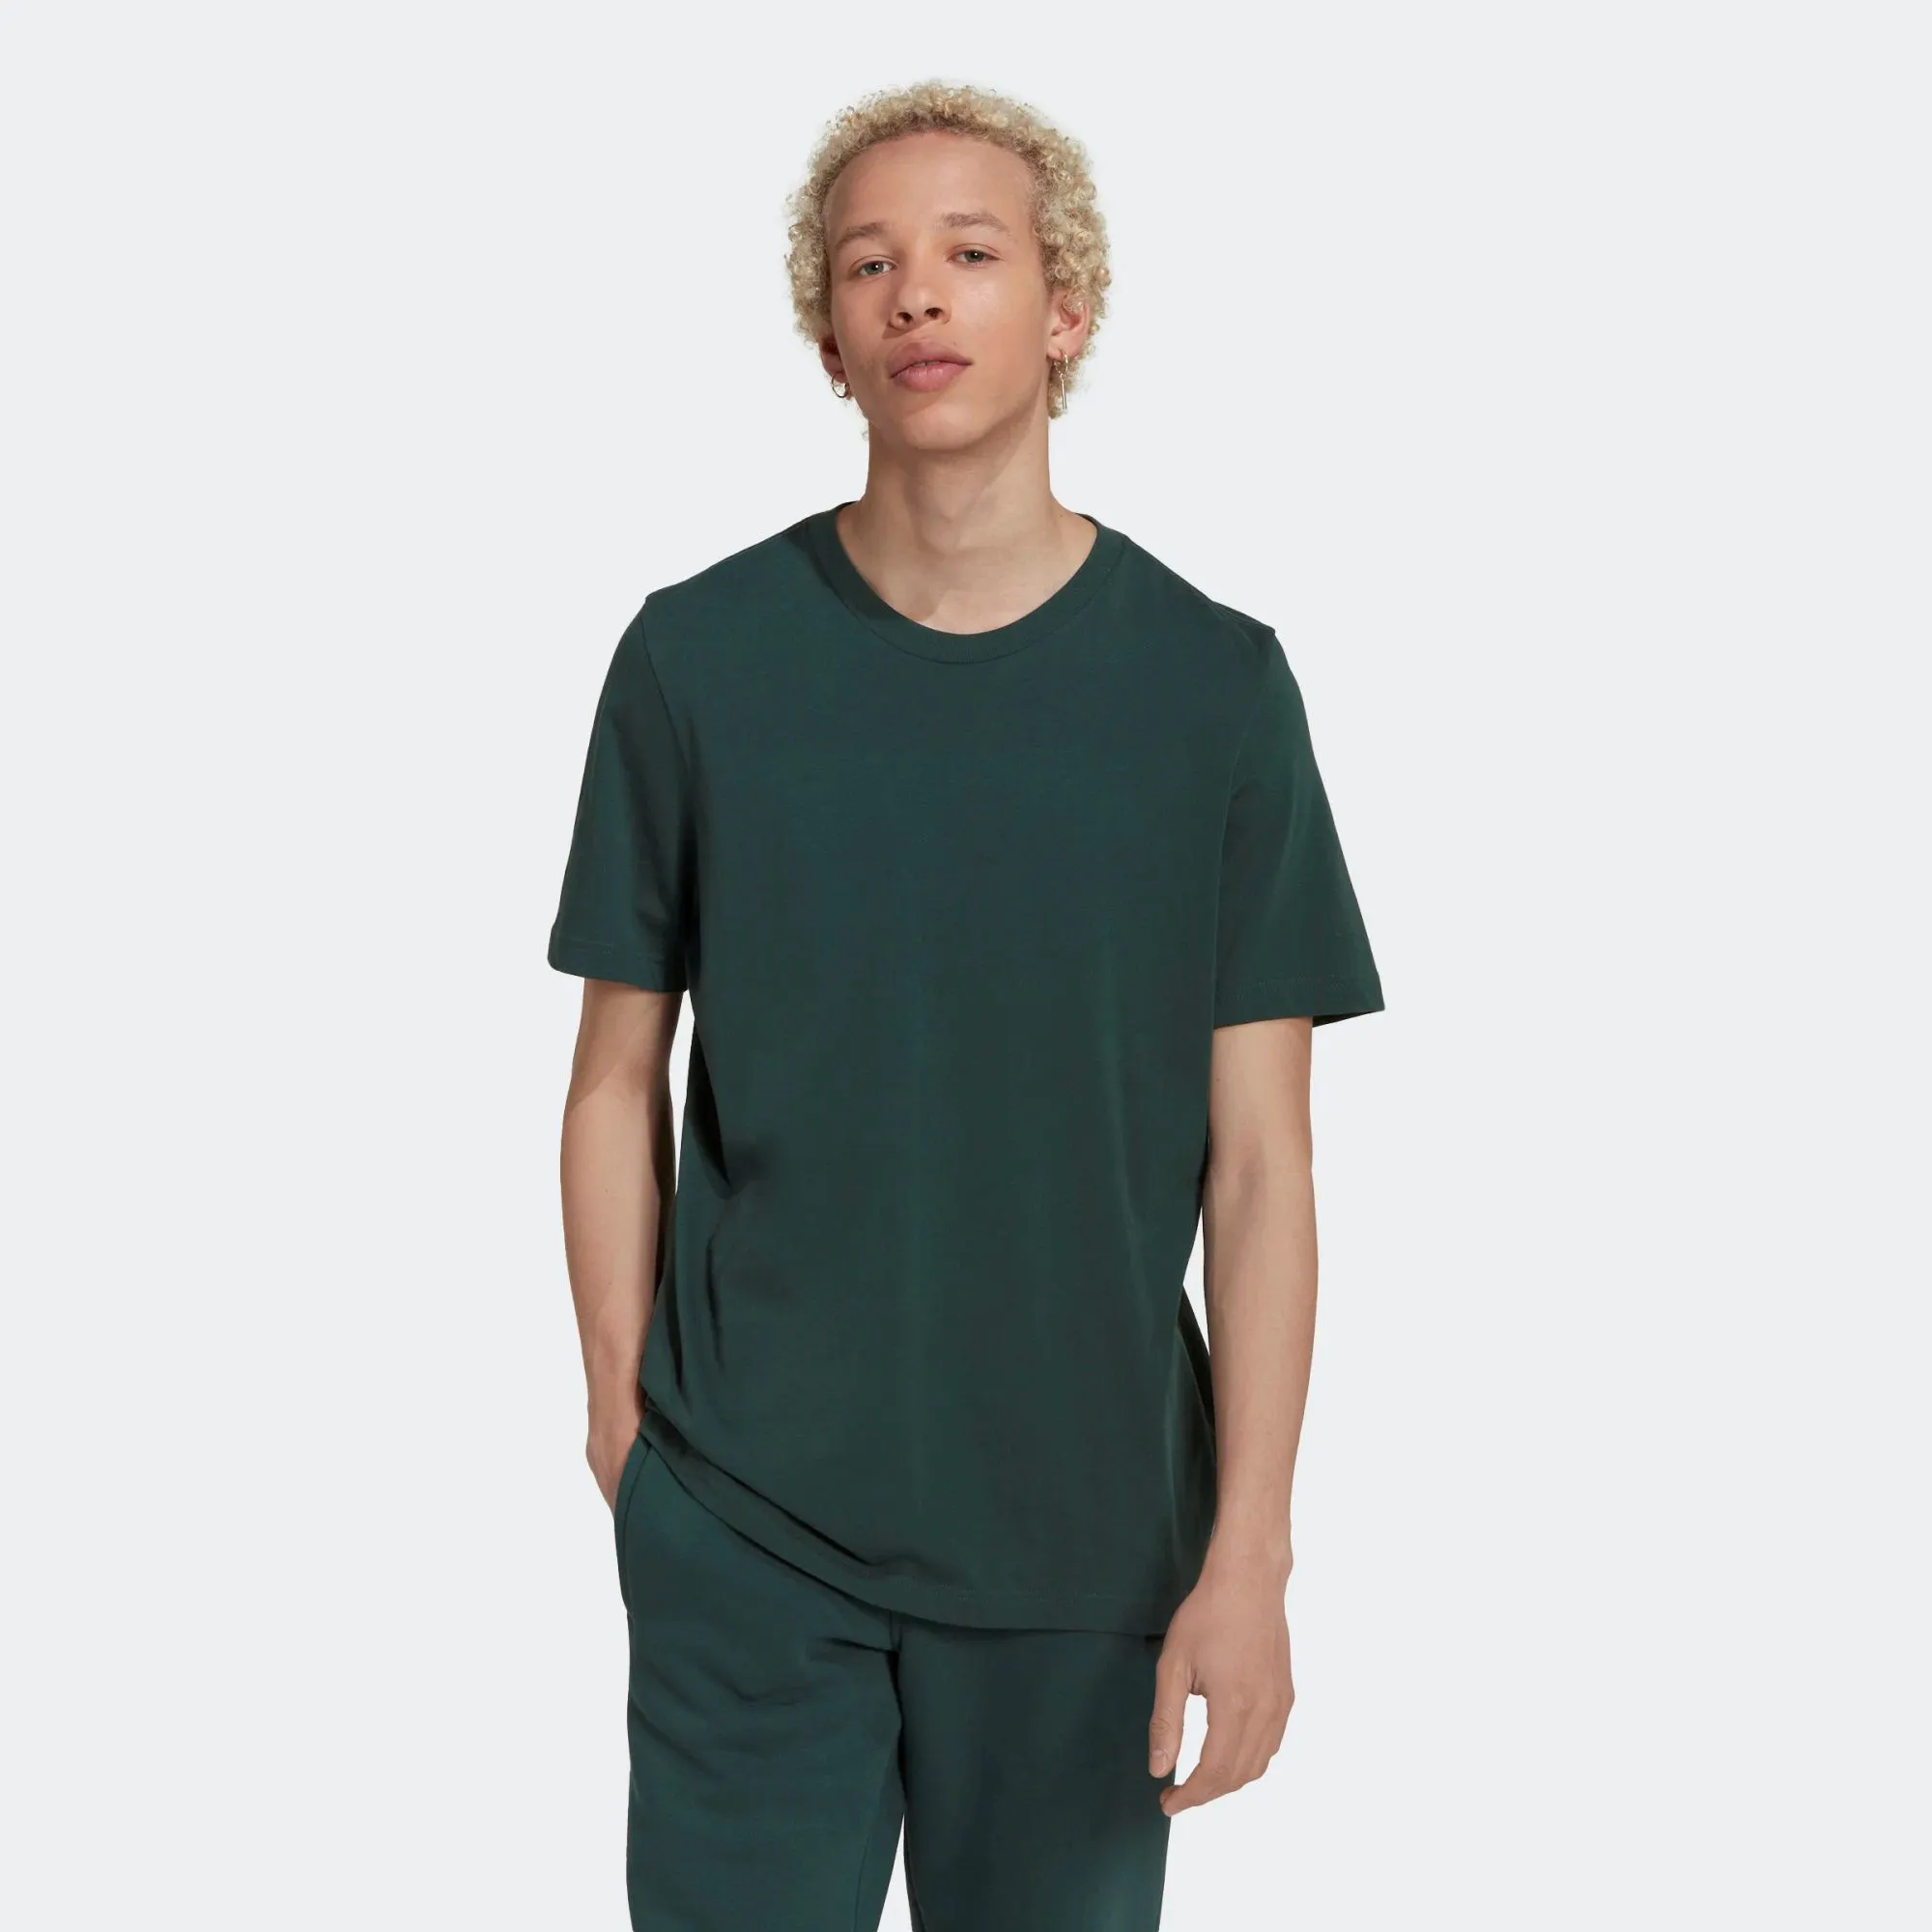 Düzenli Fit nervürlü mürettebat boyun 100% pamuklu süprem kısa kollu Mineral yeşil erkekler temel t-shirt